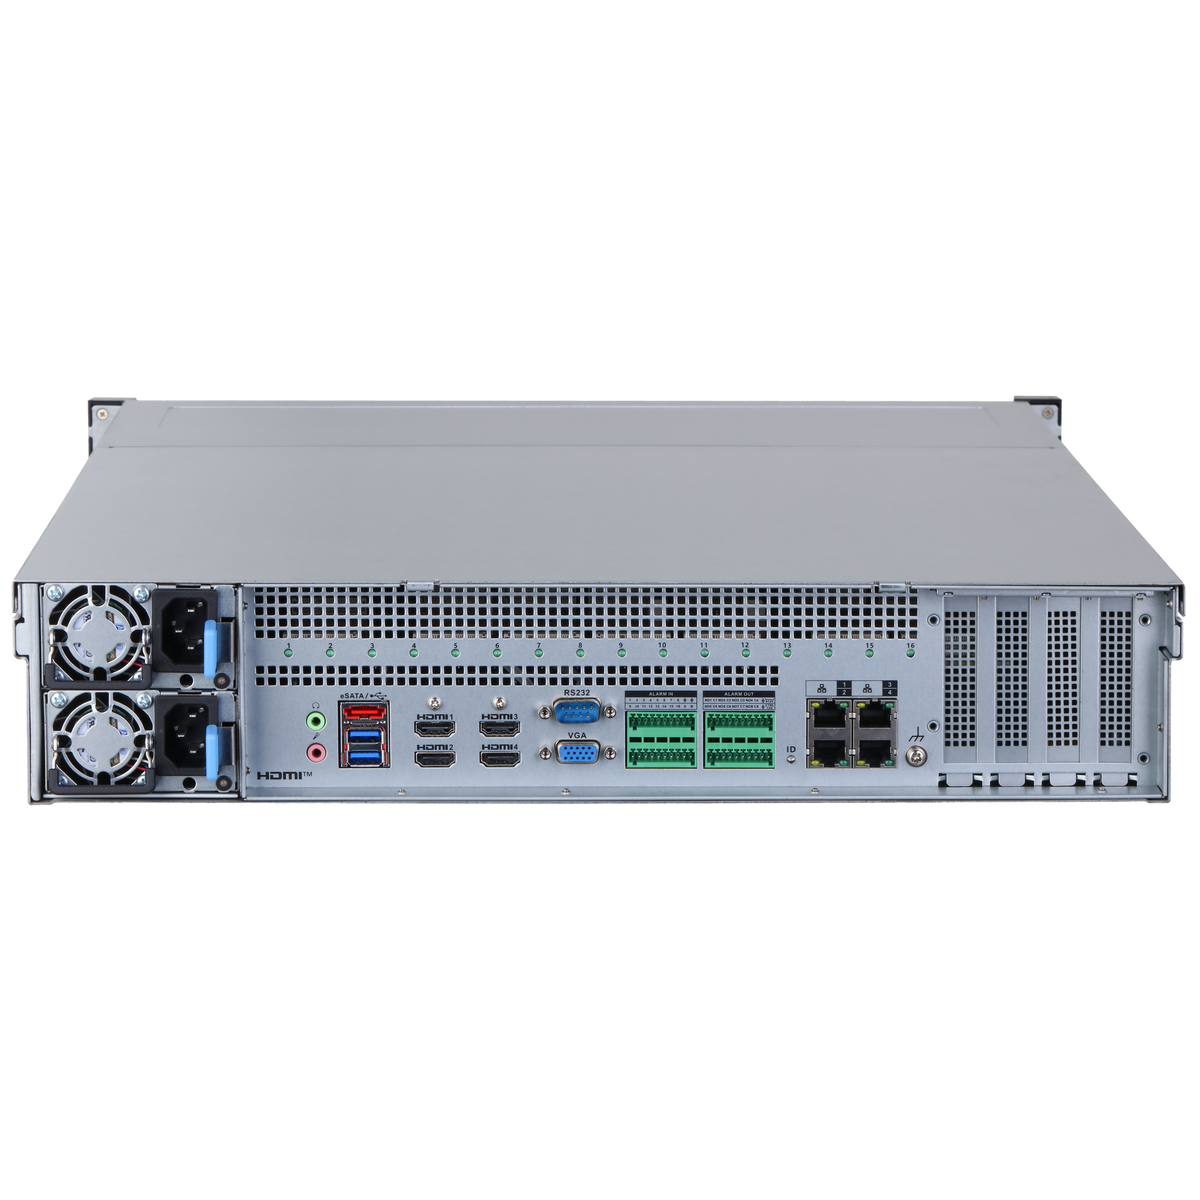 DAHUA IVSS7112R 128CH 2U Intelligent Video Surveillance Server